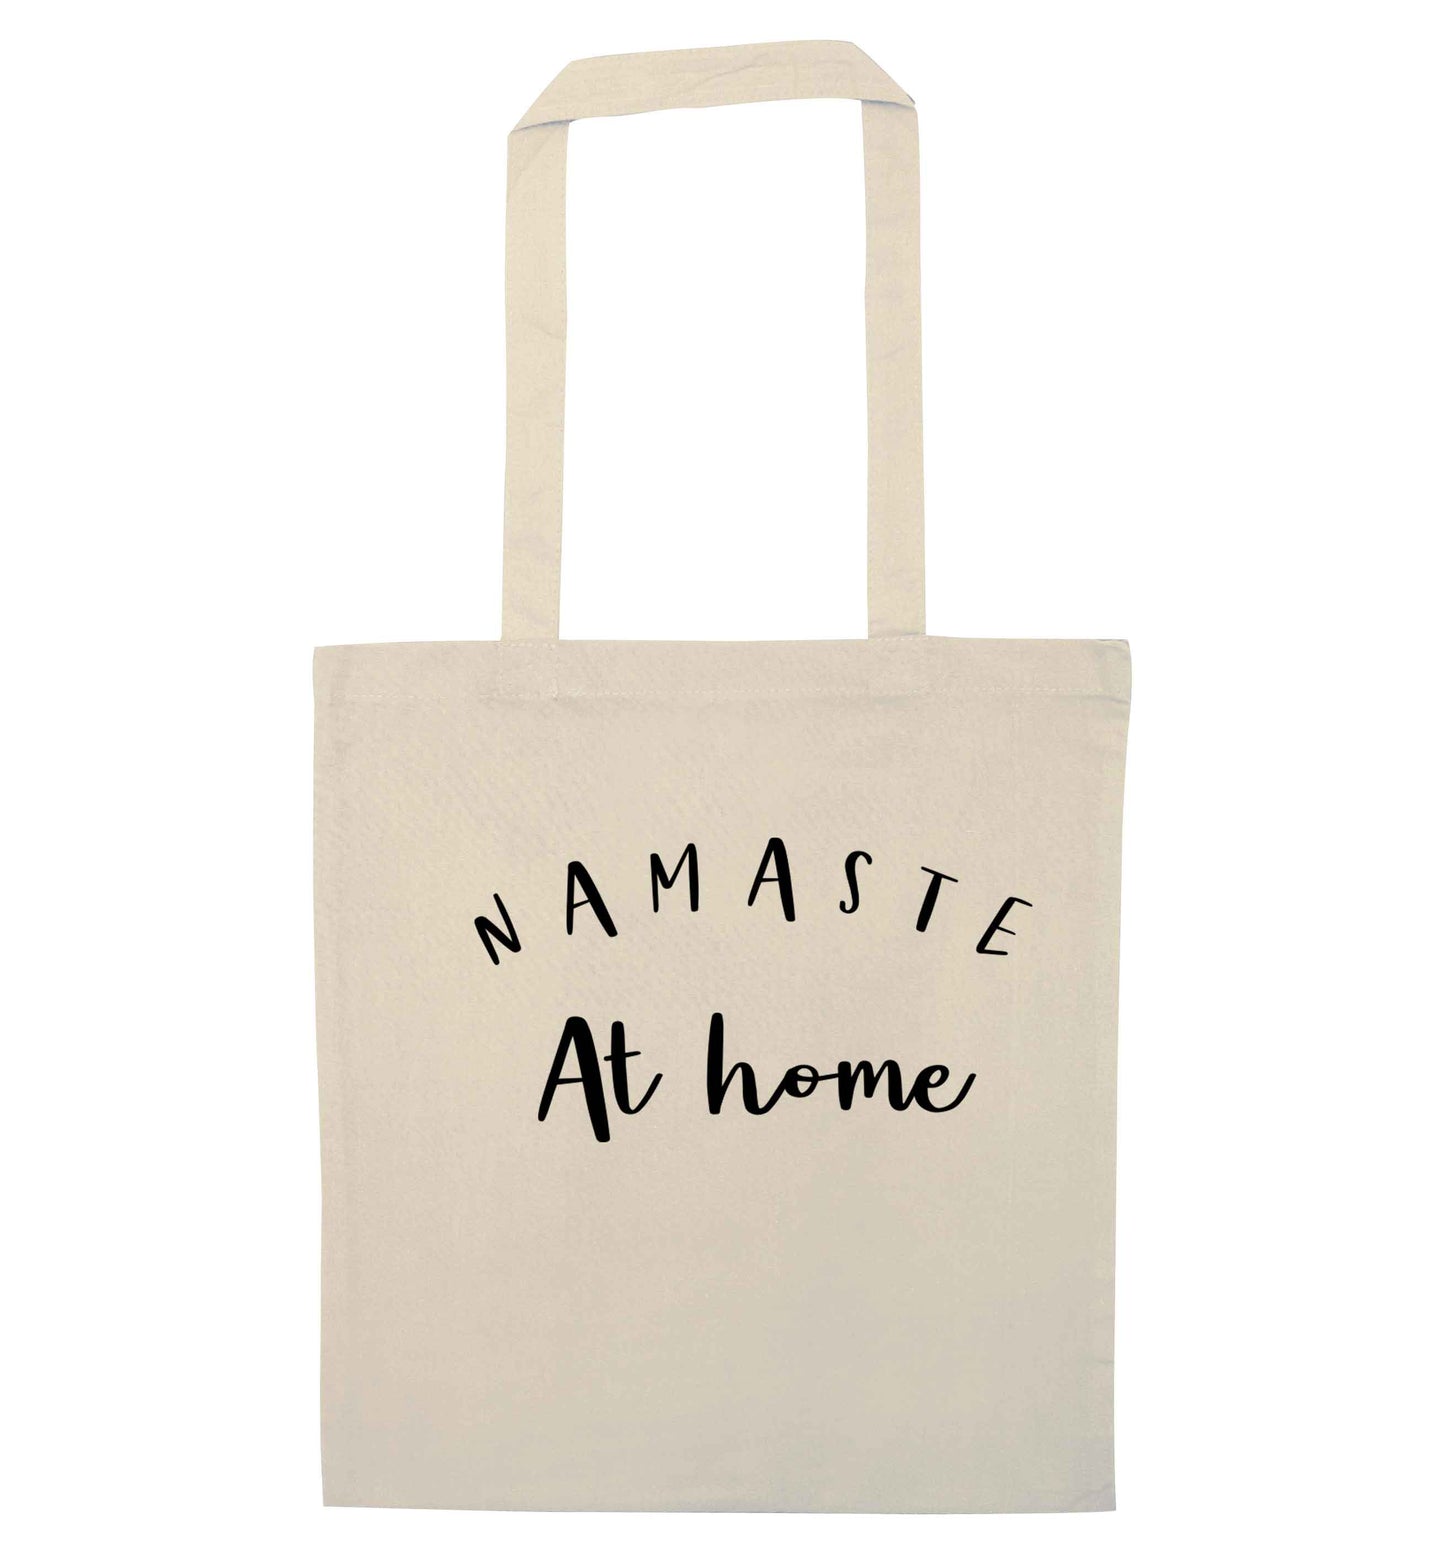 Namaste at home natural tote bag